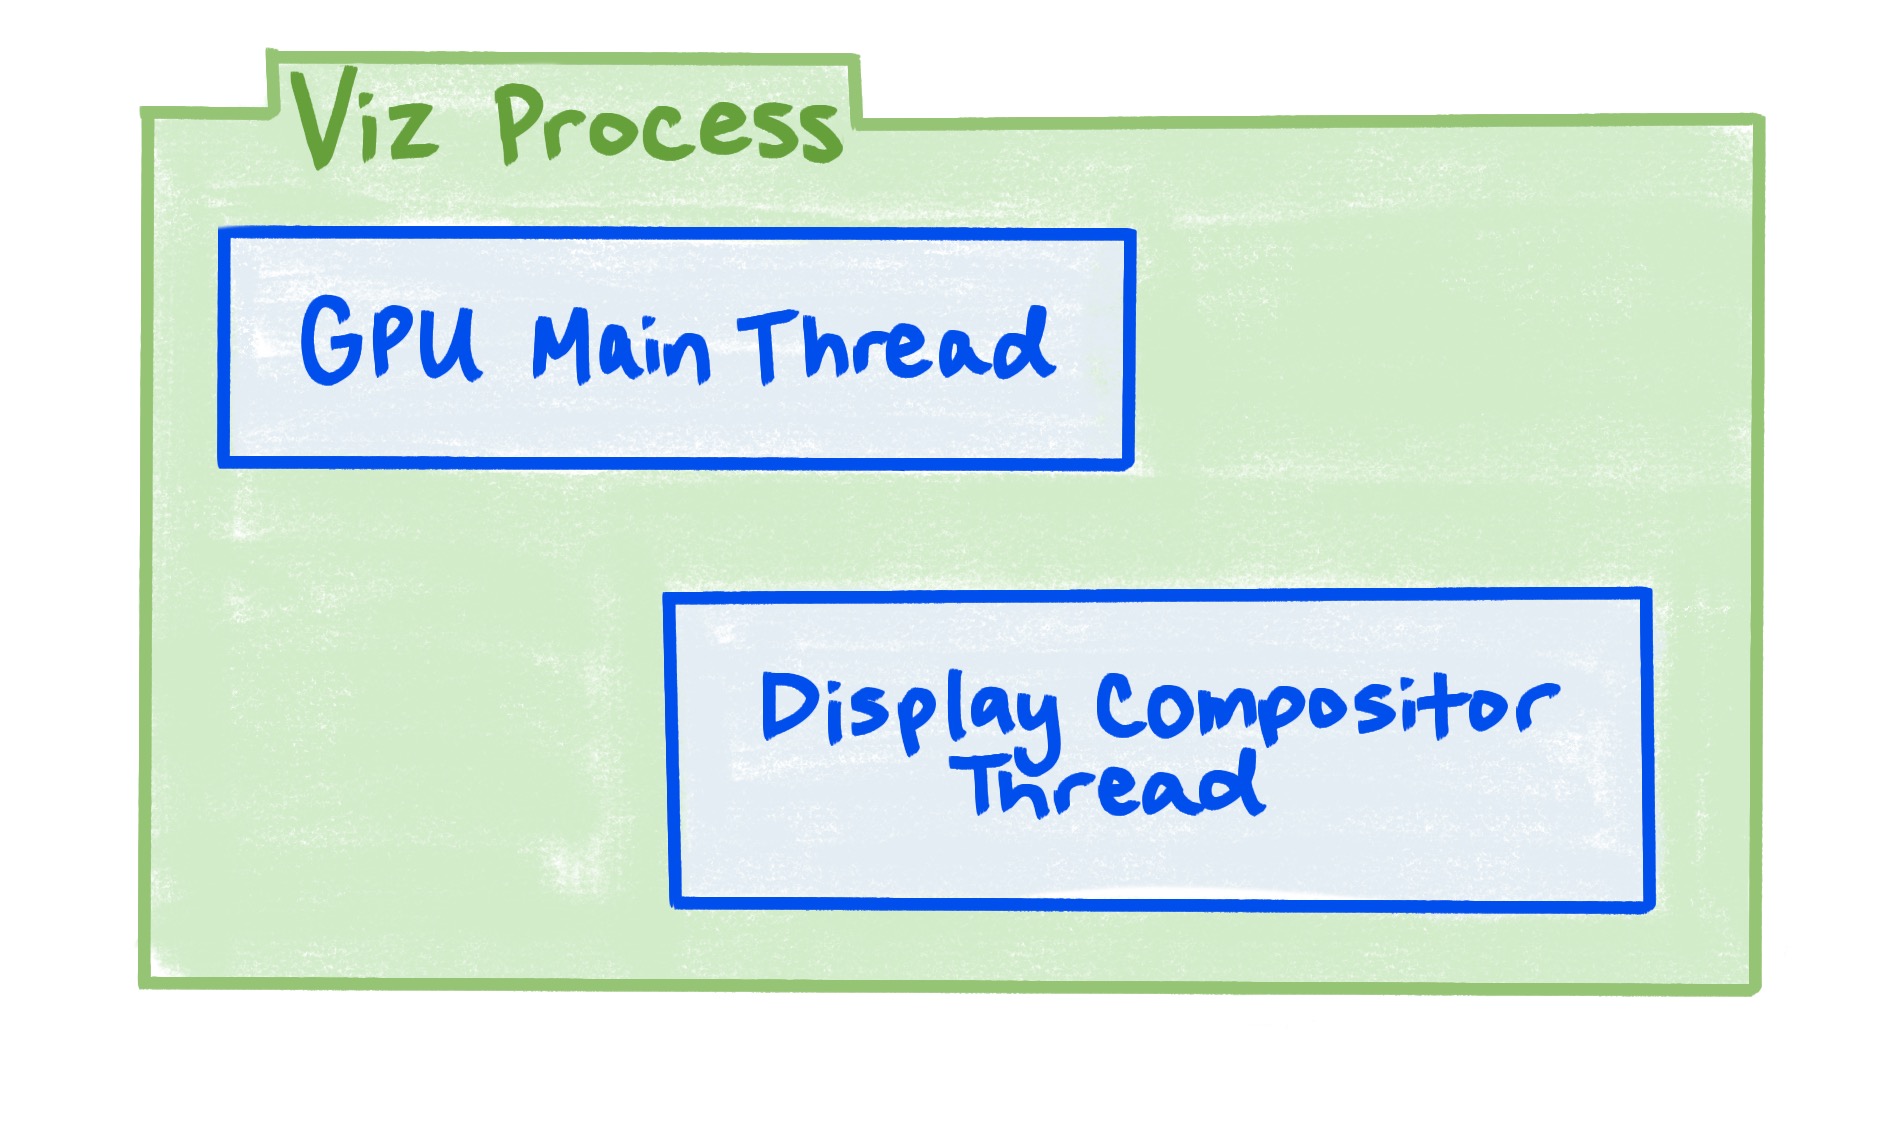 Viz 程序包含 GPU 主執行緒和顯示合成器執行緒。